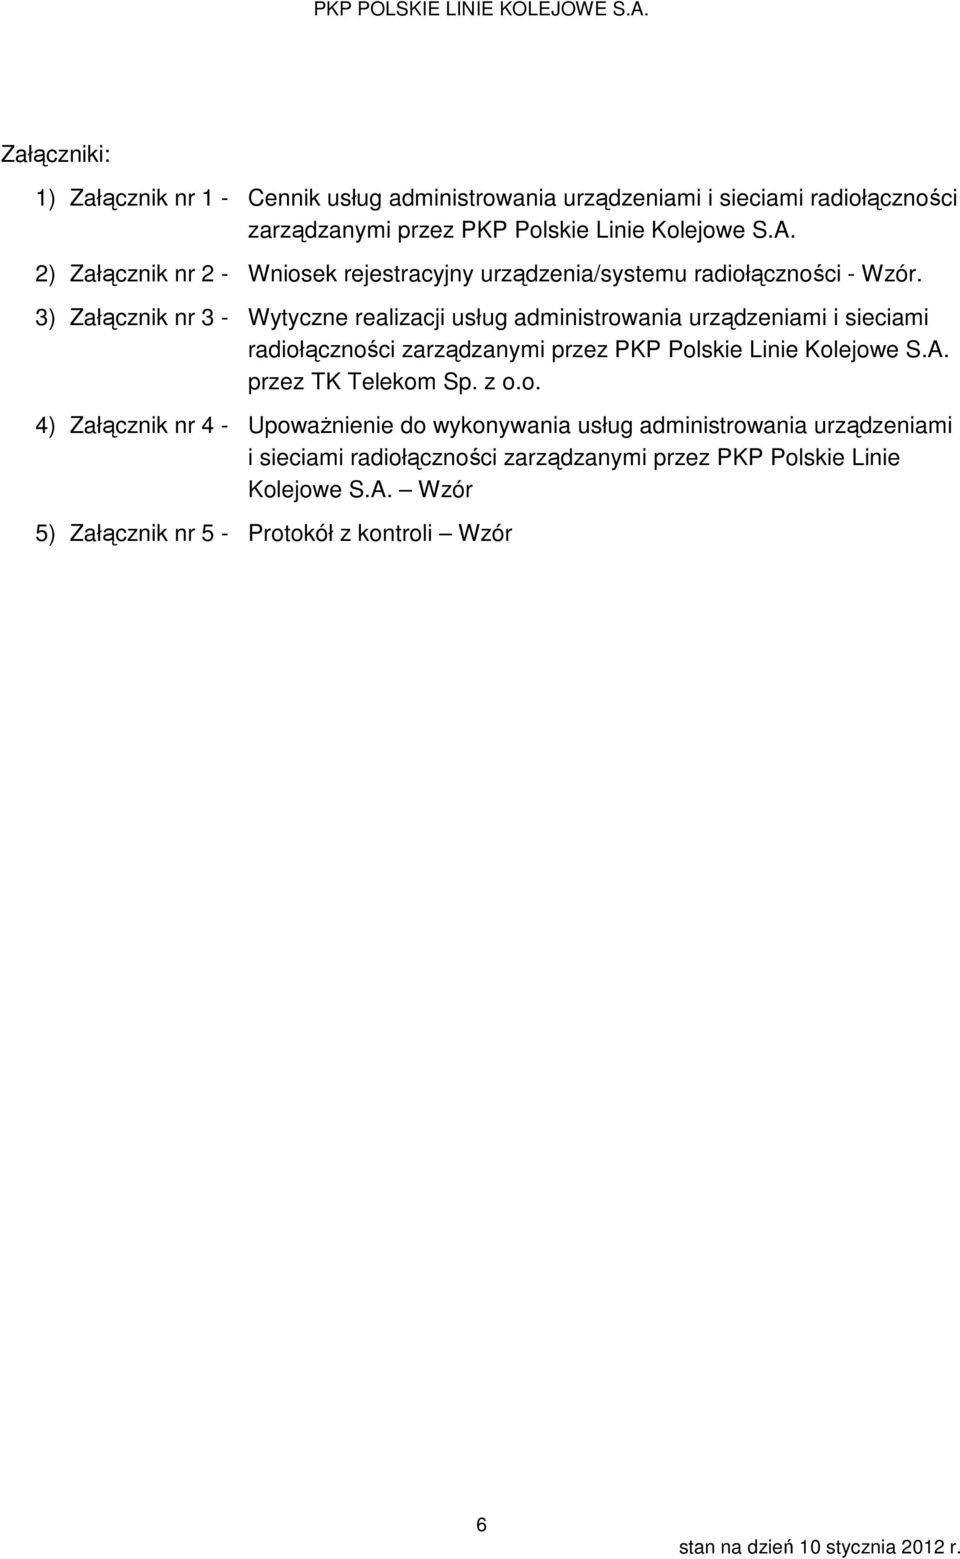 3) Załącznik nr 3 - Wytyczne realizacji usług administrowania urządzeniami i sieciami radiołączności zarządzanymi przez PKP Polskie Linie Kolejowe S.A.